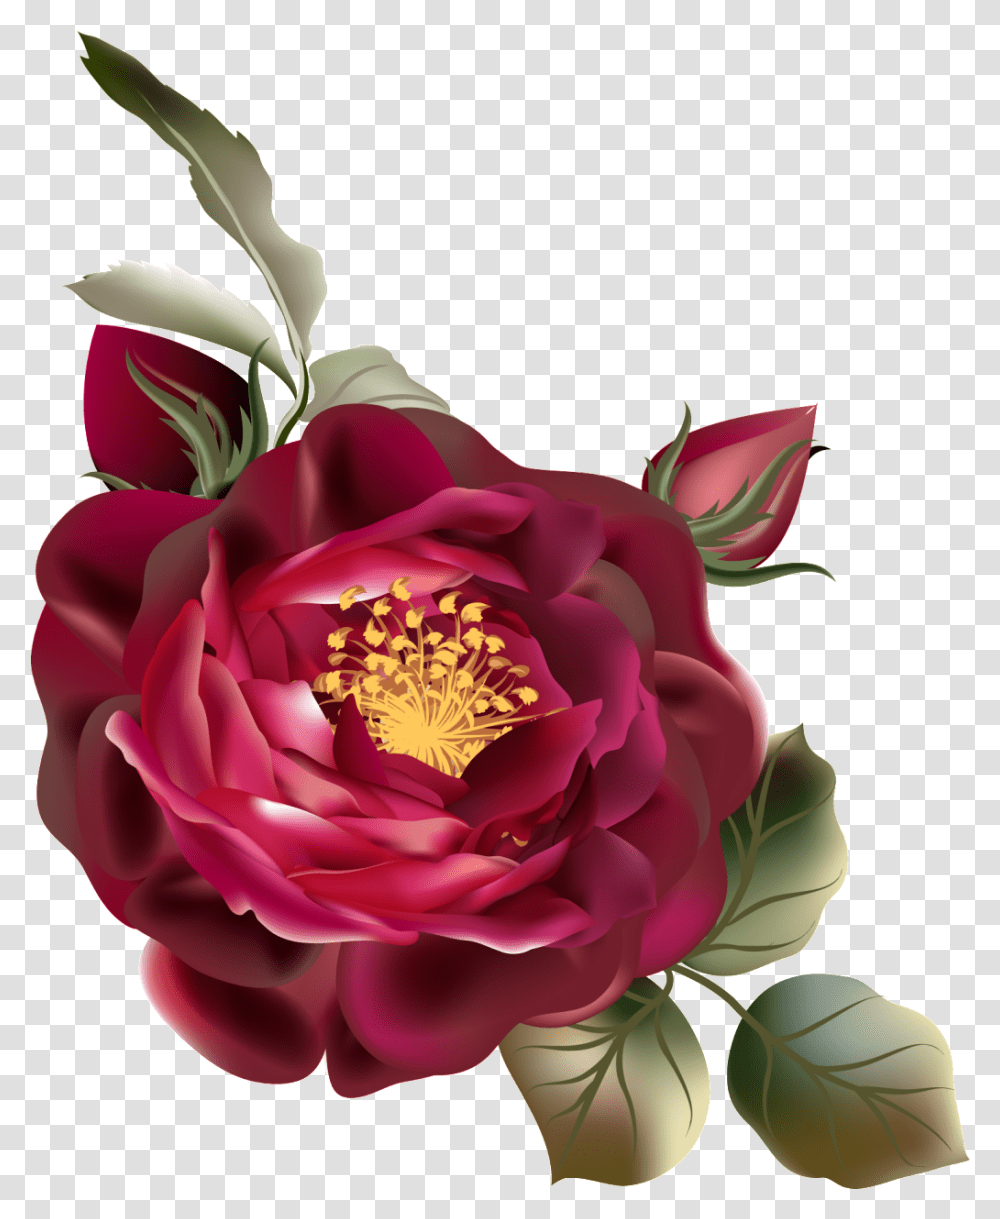 Download De Cor Rosa Vermelha Vintage Flor Vermelha, Plant, Dahlia, Flower, Blossom Transparent Png